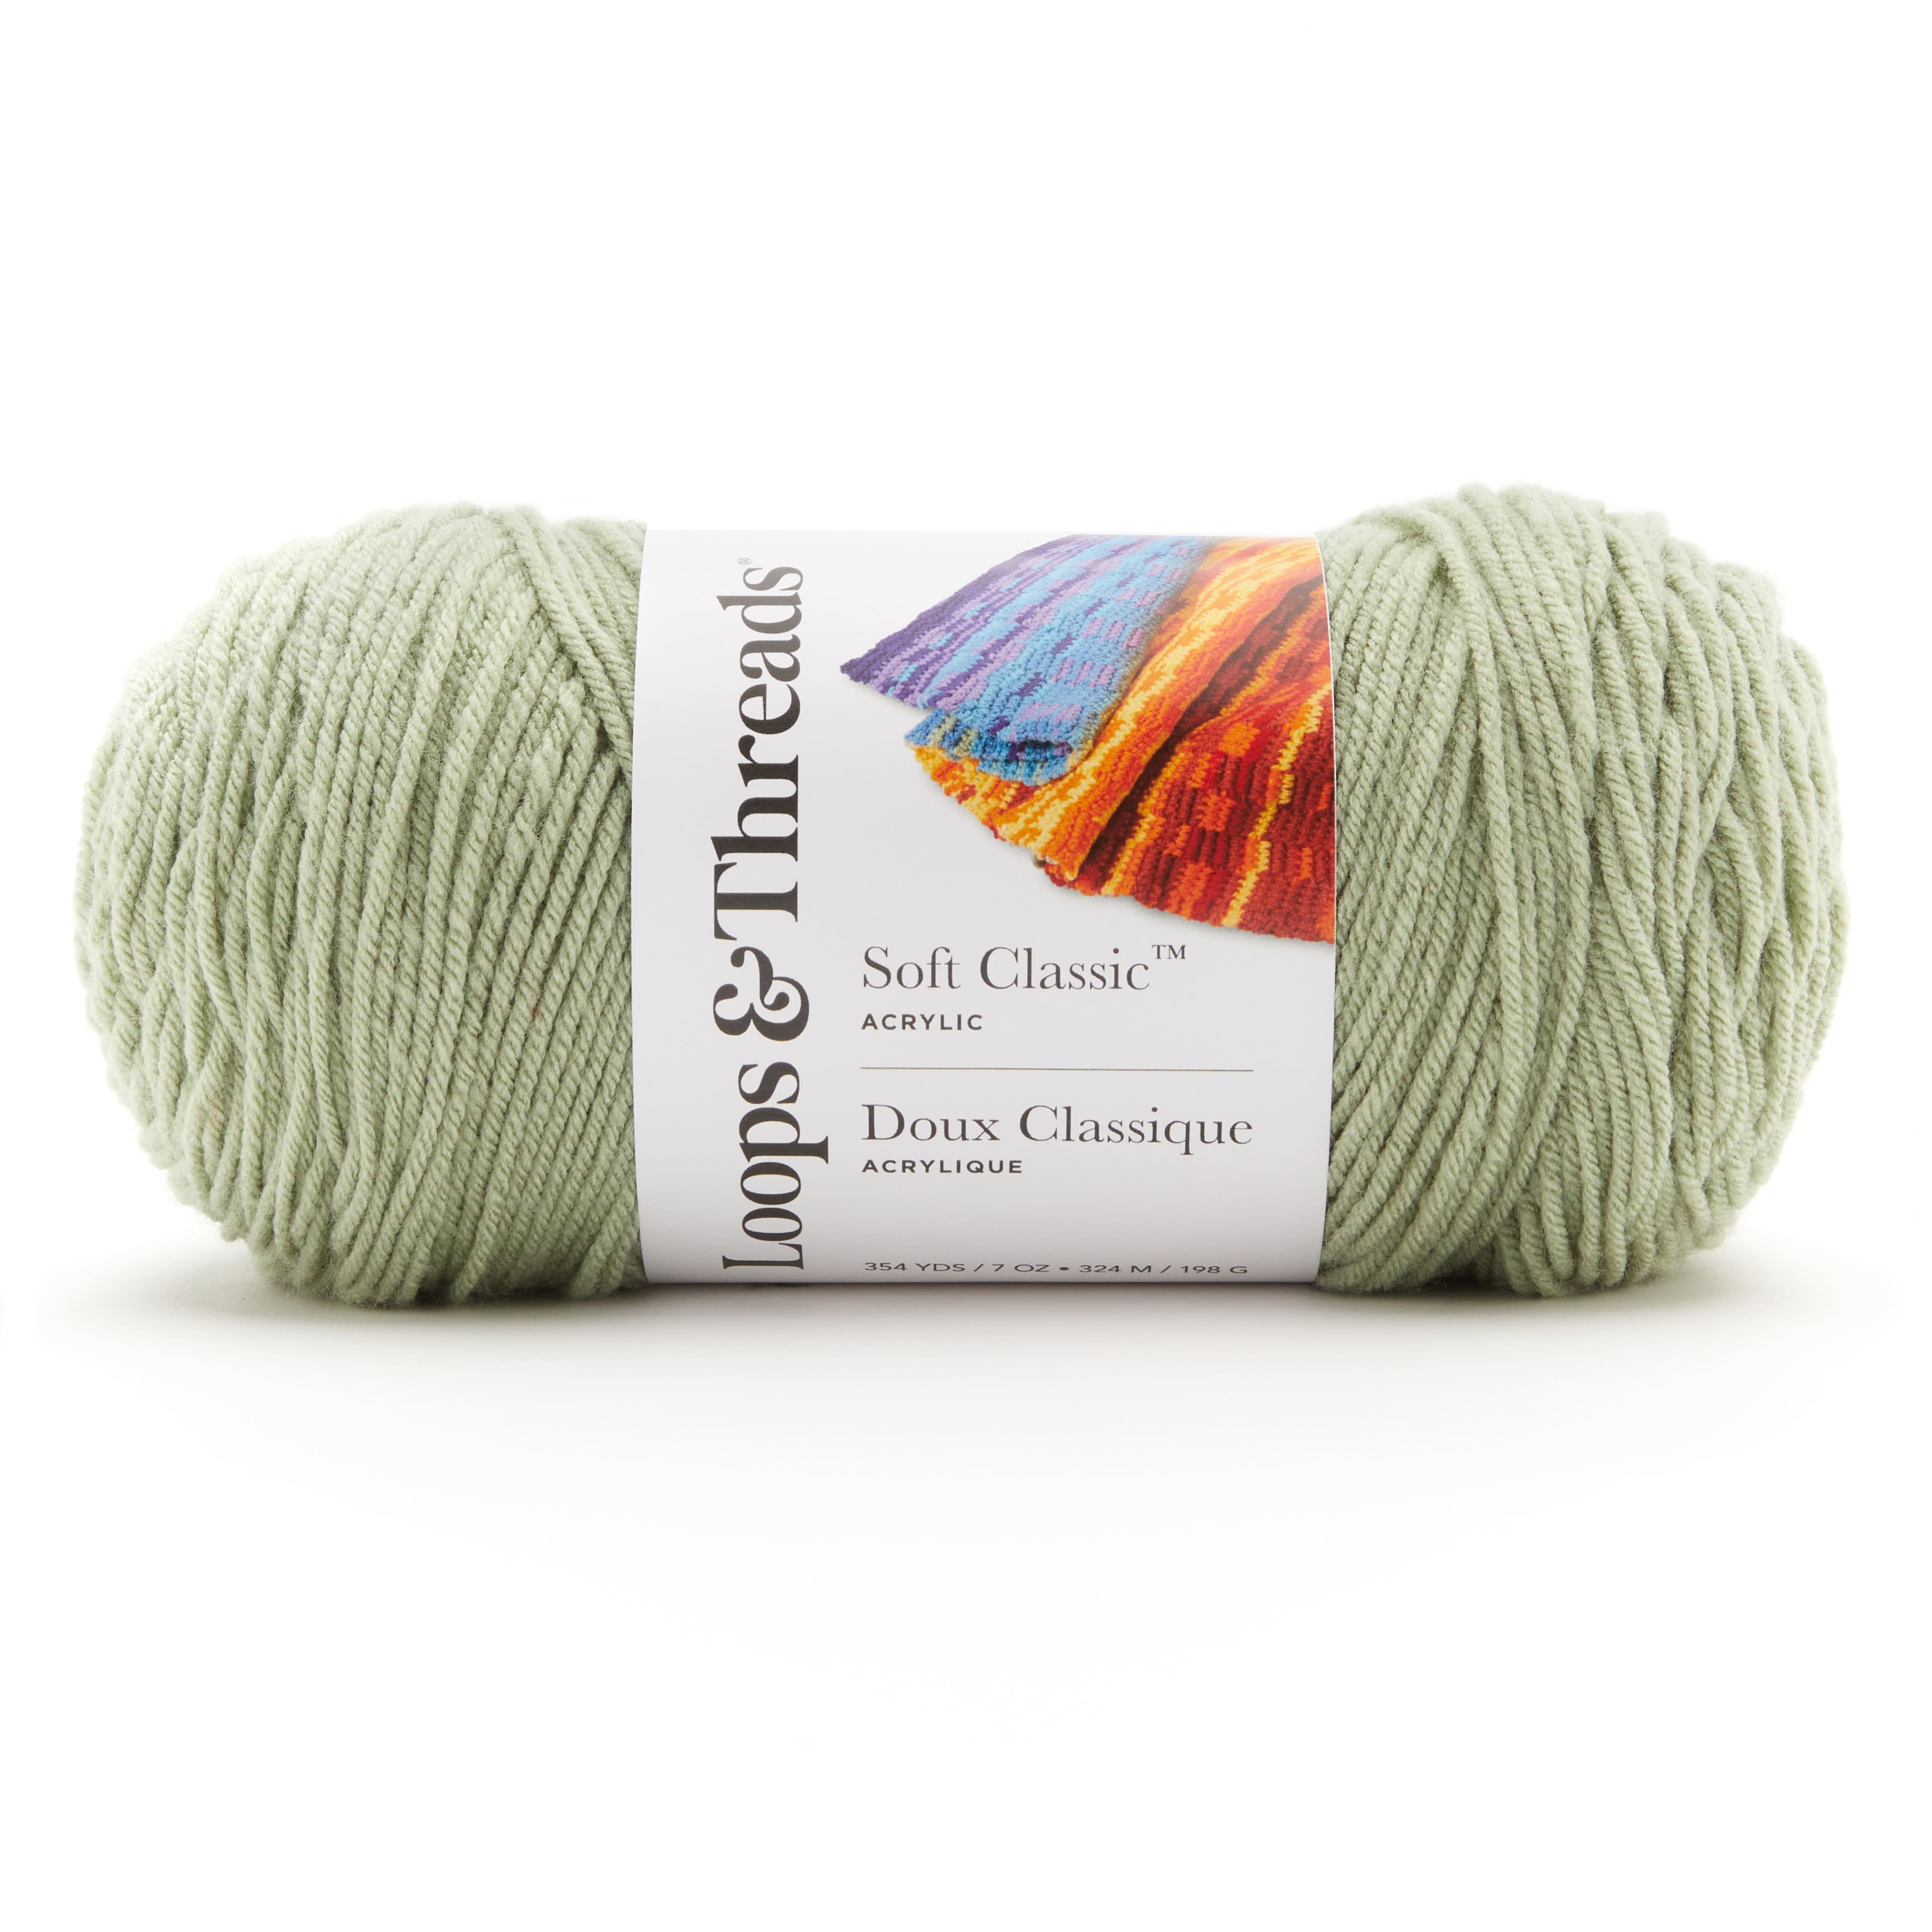 Latch Hook Yarn Precut 61 Assorted Colors Wool Yarn Set for